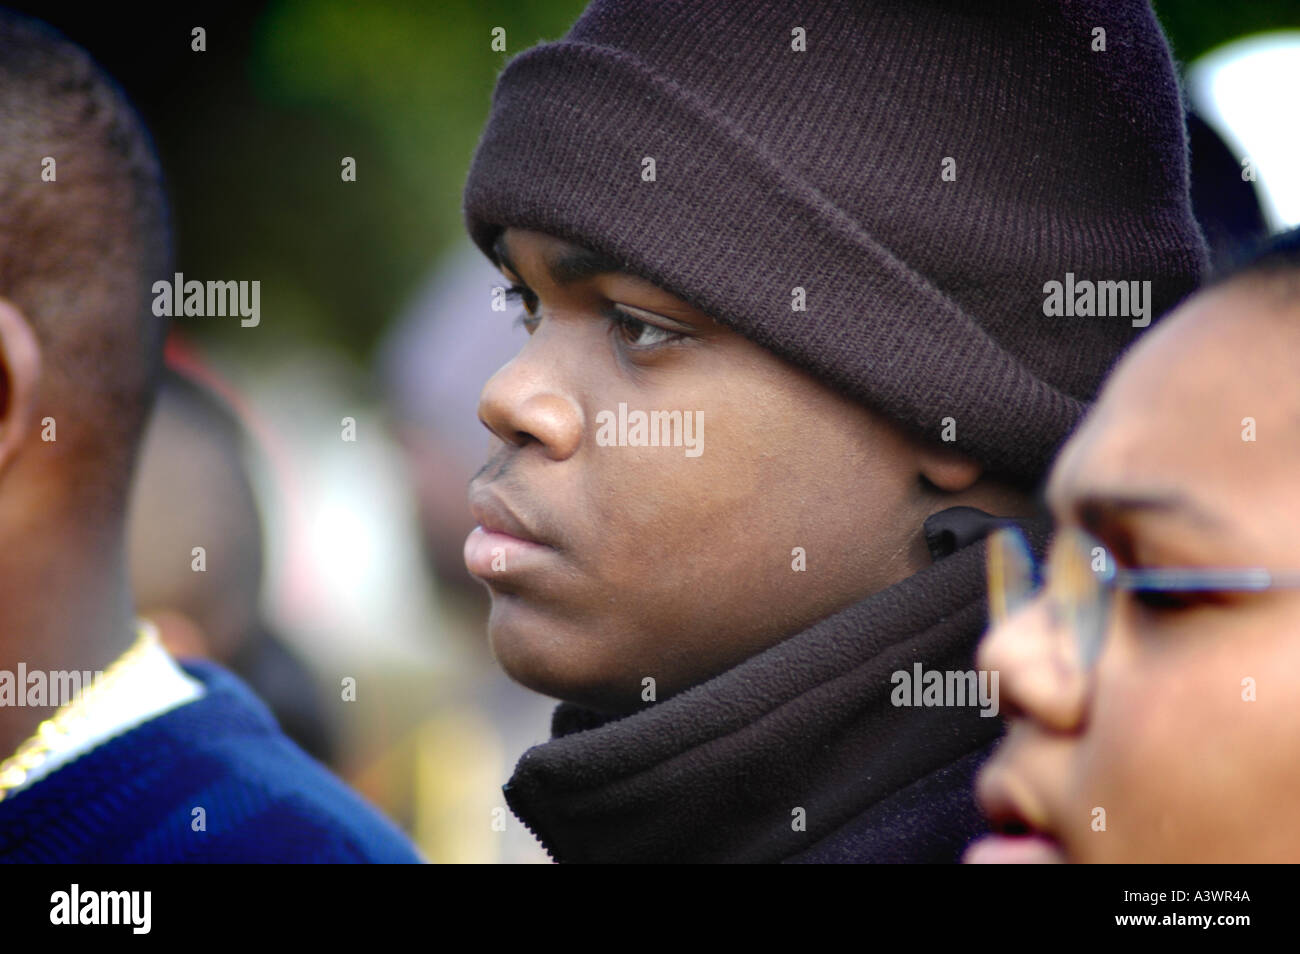 Jeune adolescent de souche jeune garçon noir au rassemblement de manifestation anti-meurtre à Atlanta Géorgie USA Afro Watch Cap BLM, police Banque D'Images